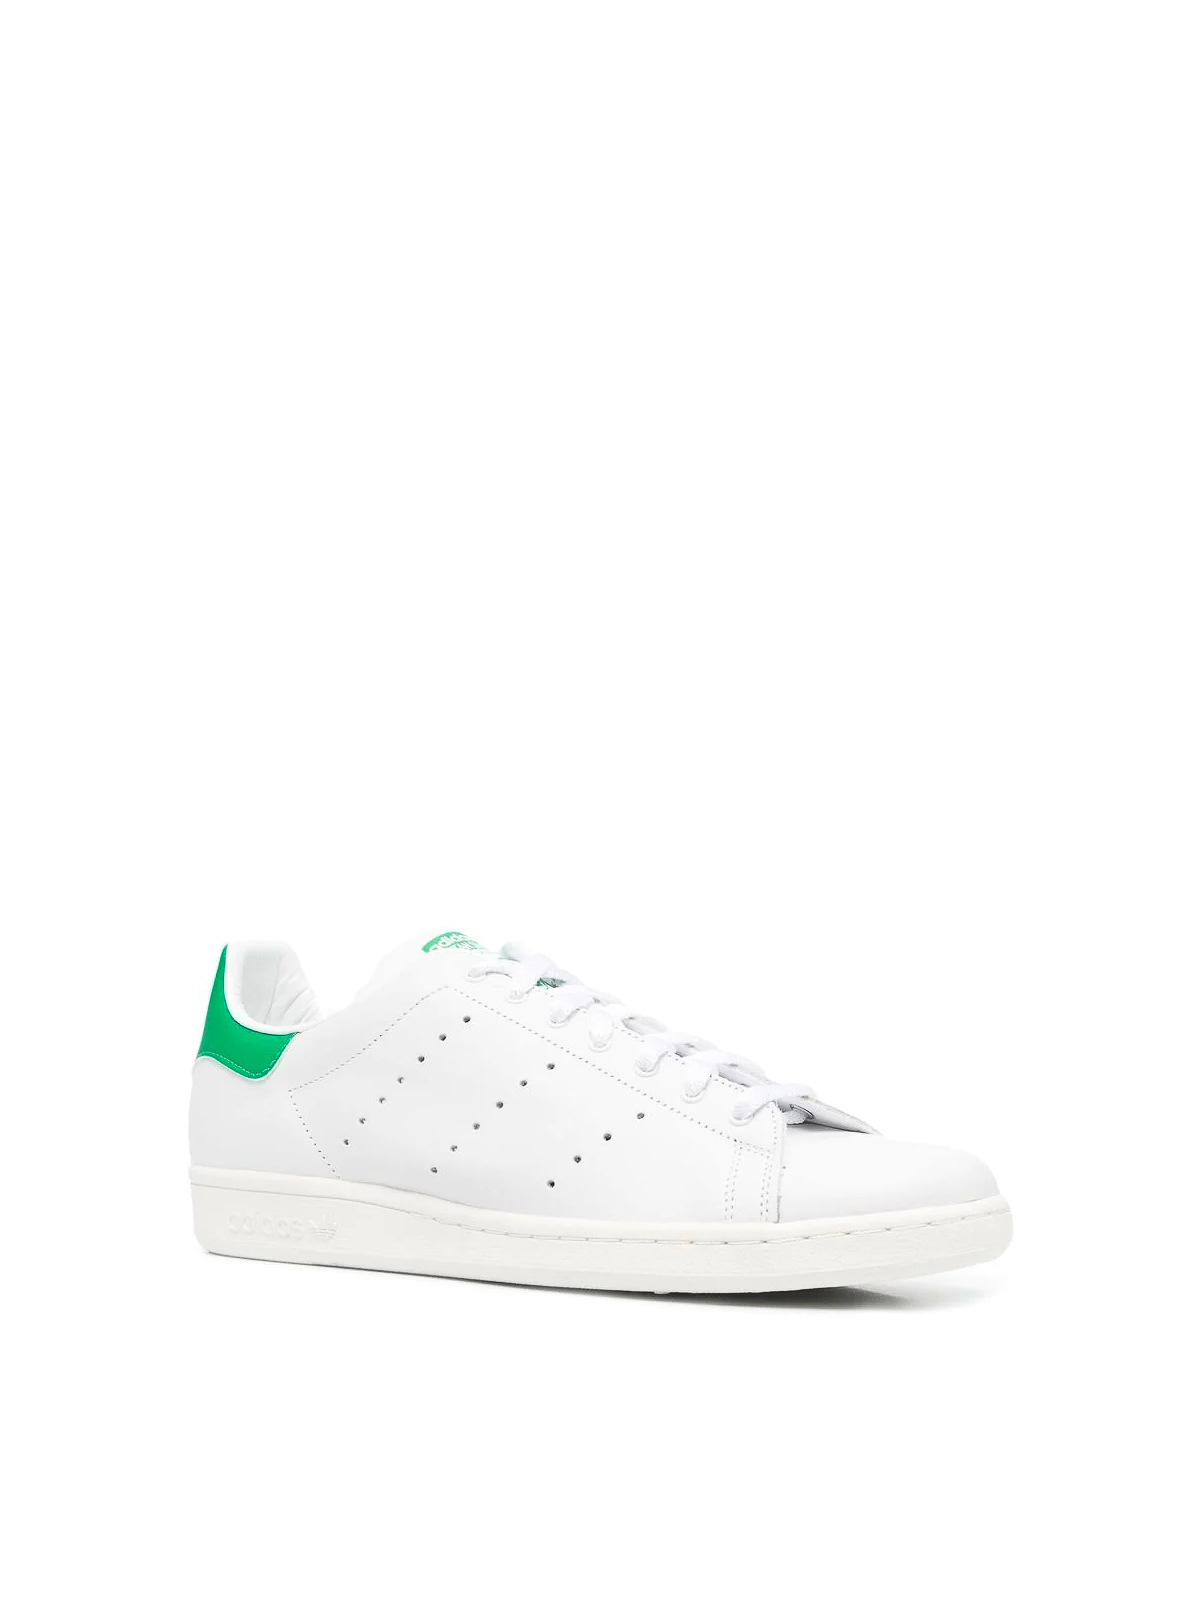 Shop Adidas Originals Zapatillas - Stan Smith In White